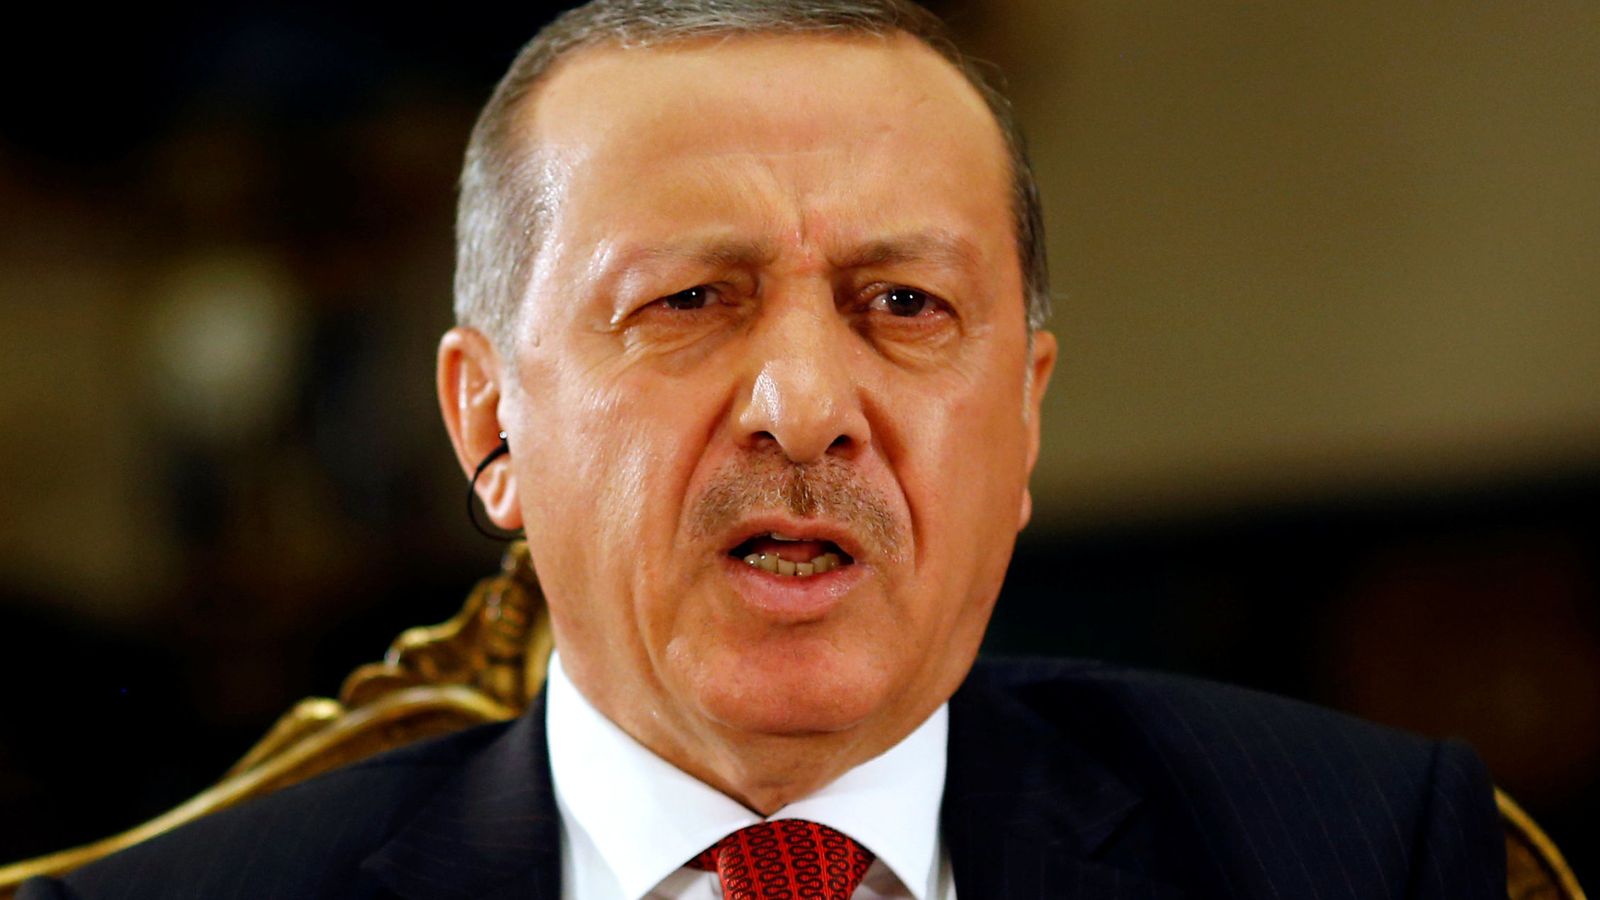 Foto: El presidente turco Tayyip Erdogan en el palacio presidencial. (Reuters)